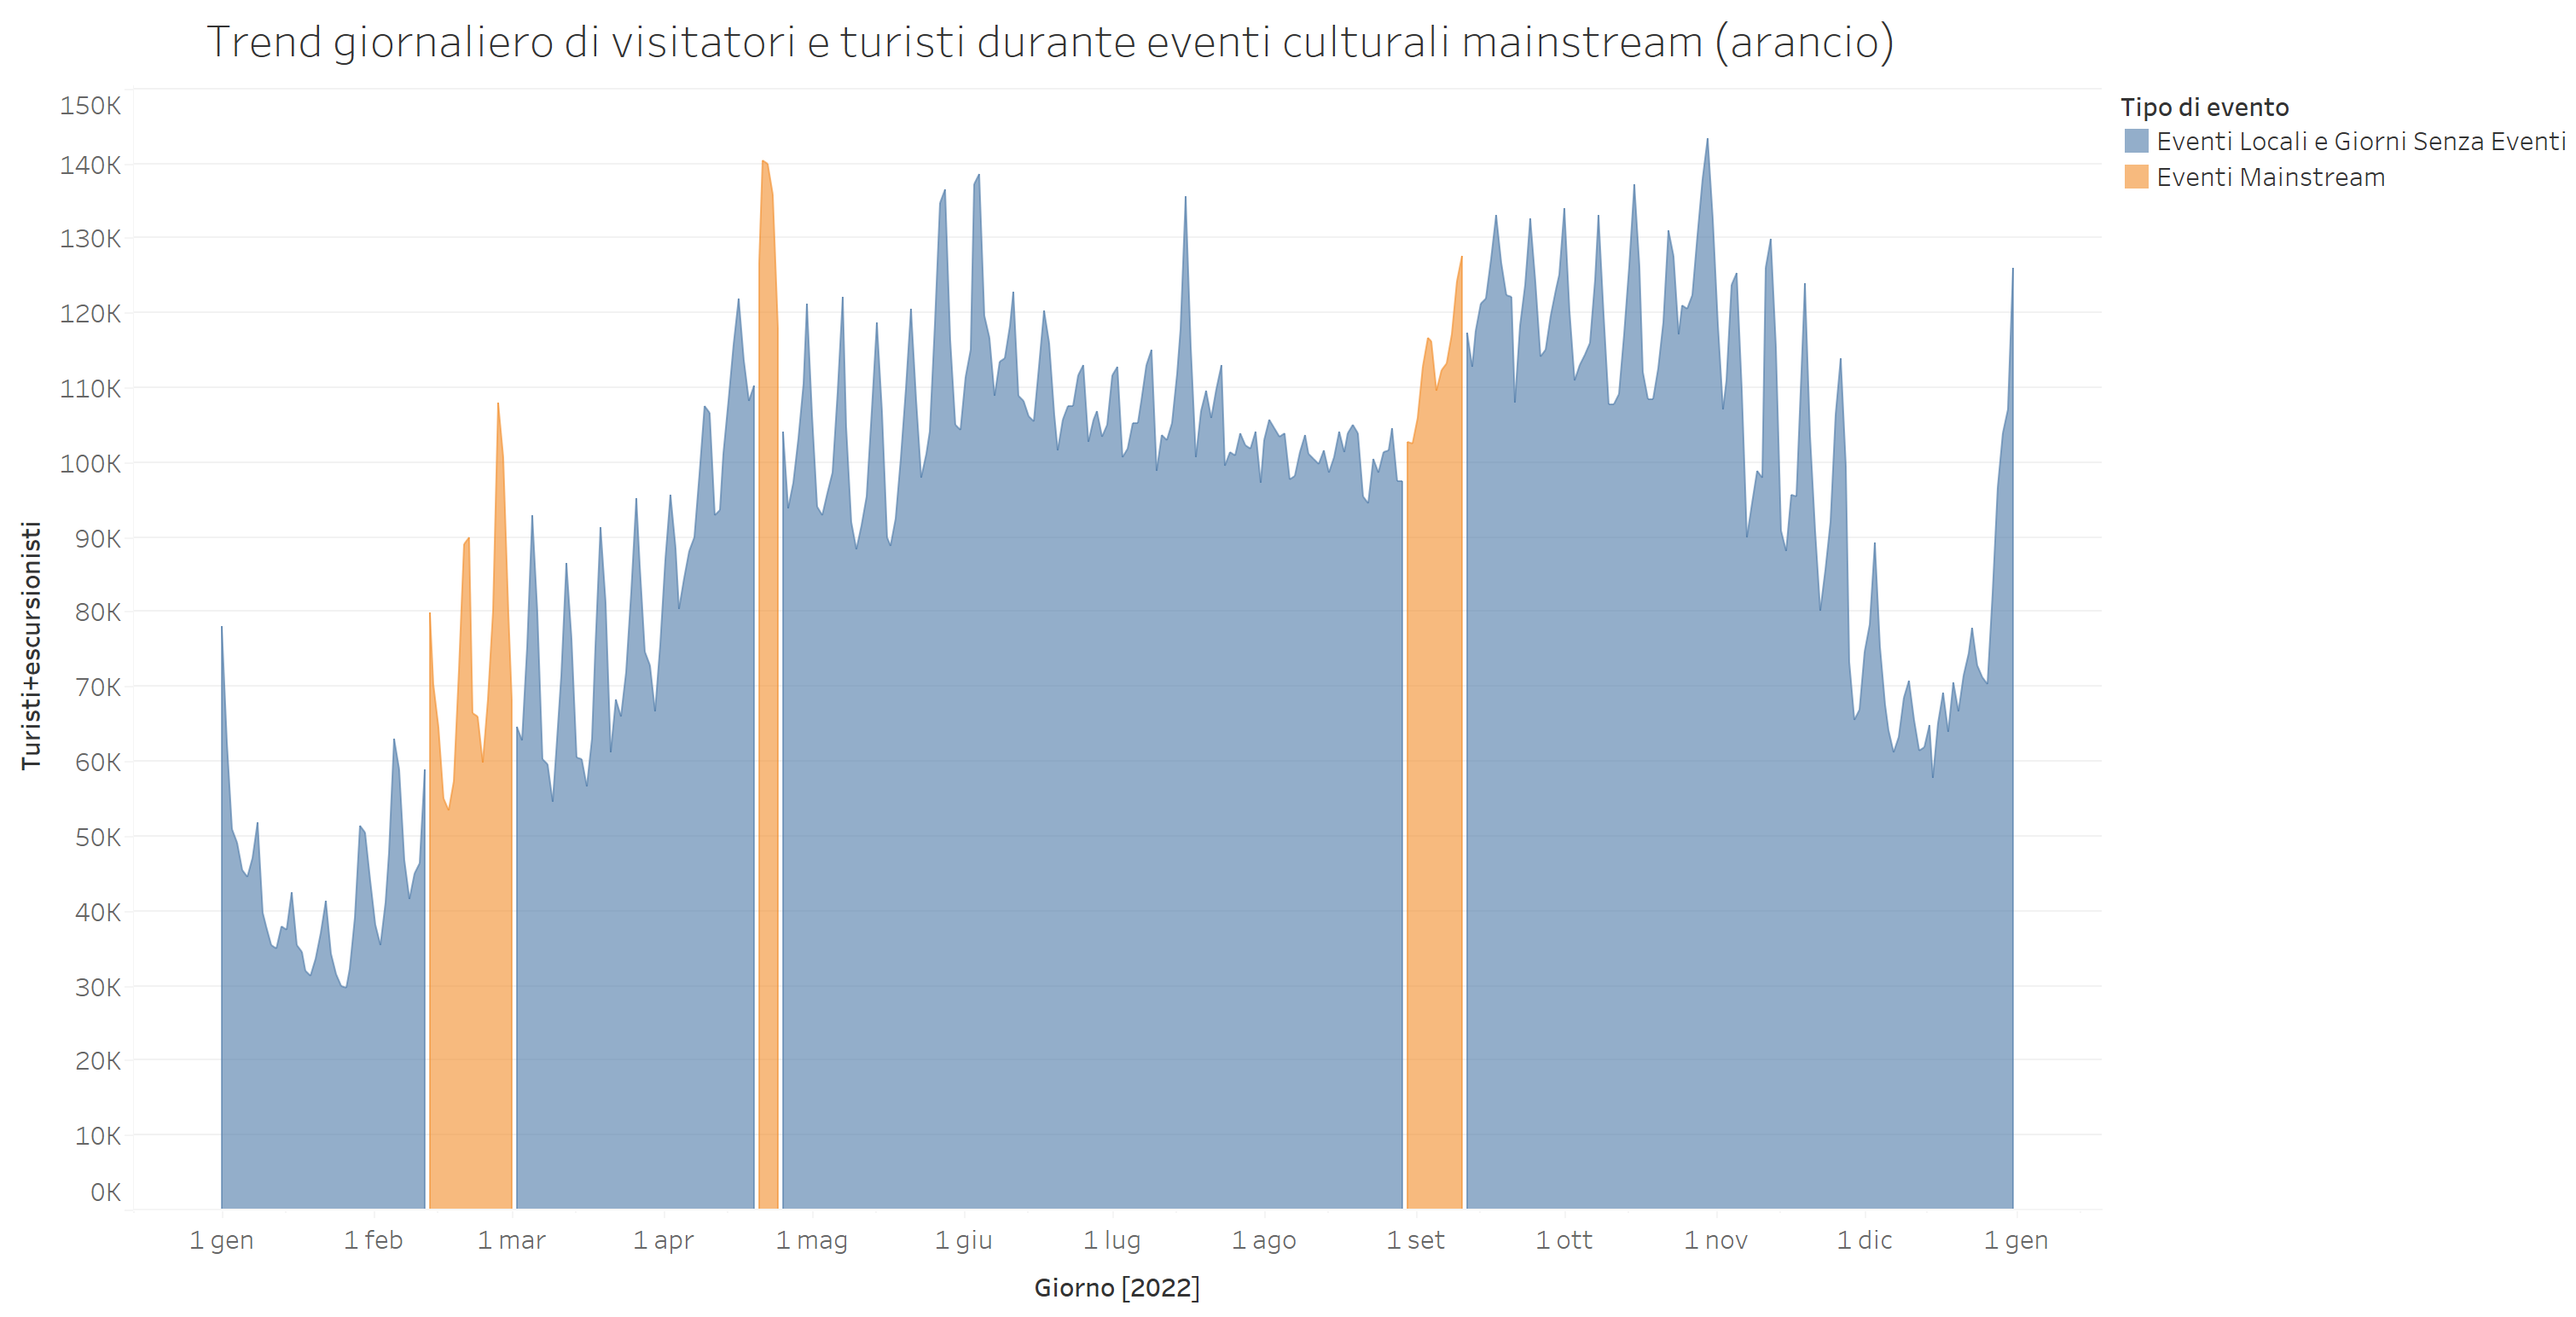 Trend dei visitatori e in evidenza gli eventi mainstream